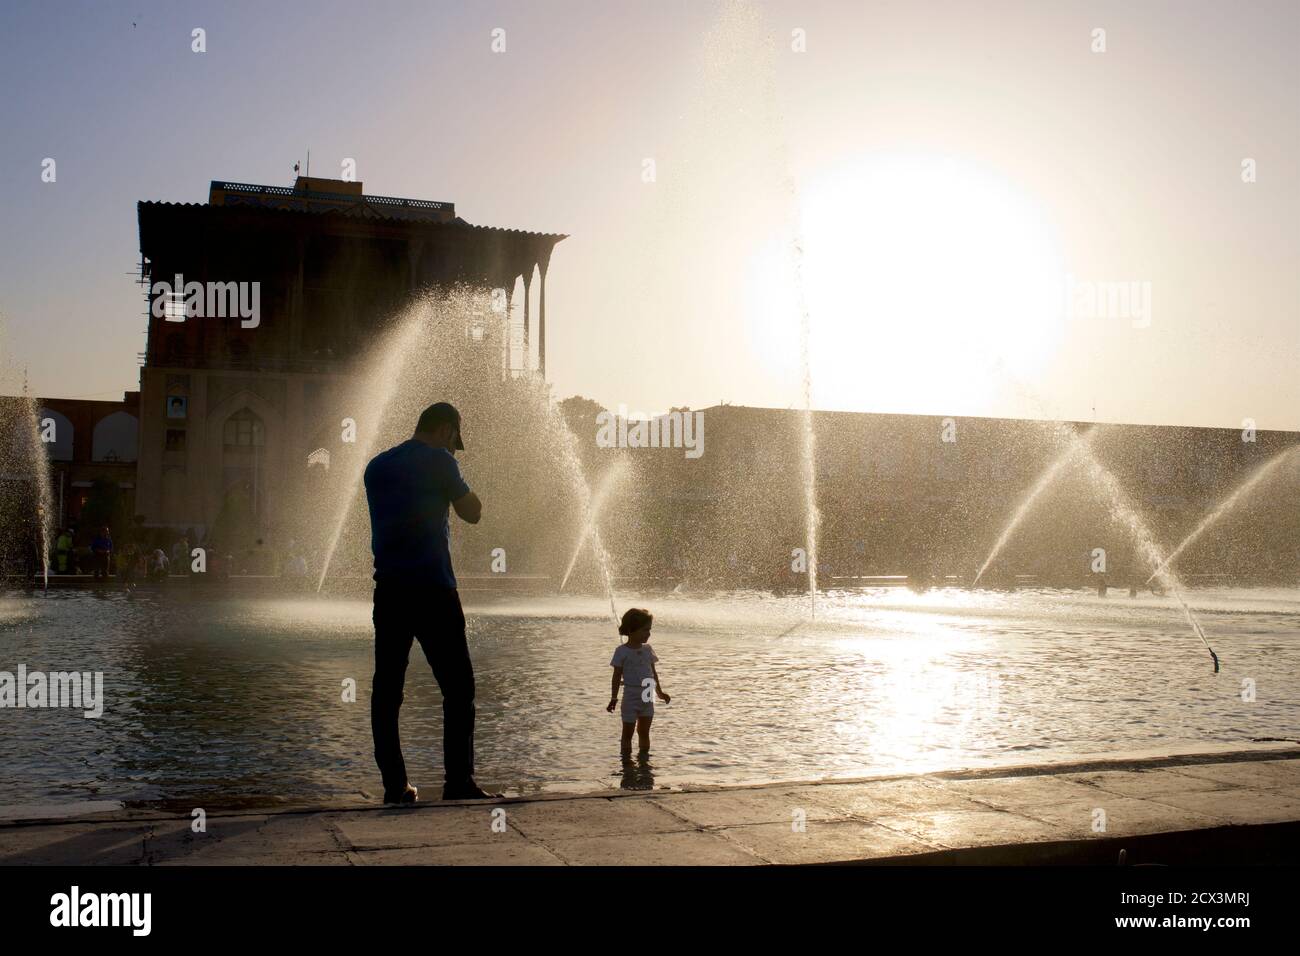 Palais Ali Qapu et fontaines publiques sur la place Naqsh-e Jahan. Place de l'Imam, ville d'Isfahan, Iran. Père et enfant iraniens Banque D'Images